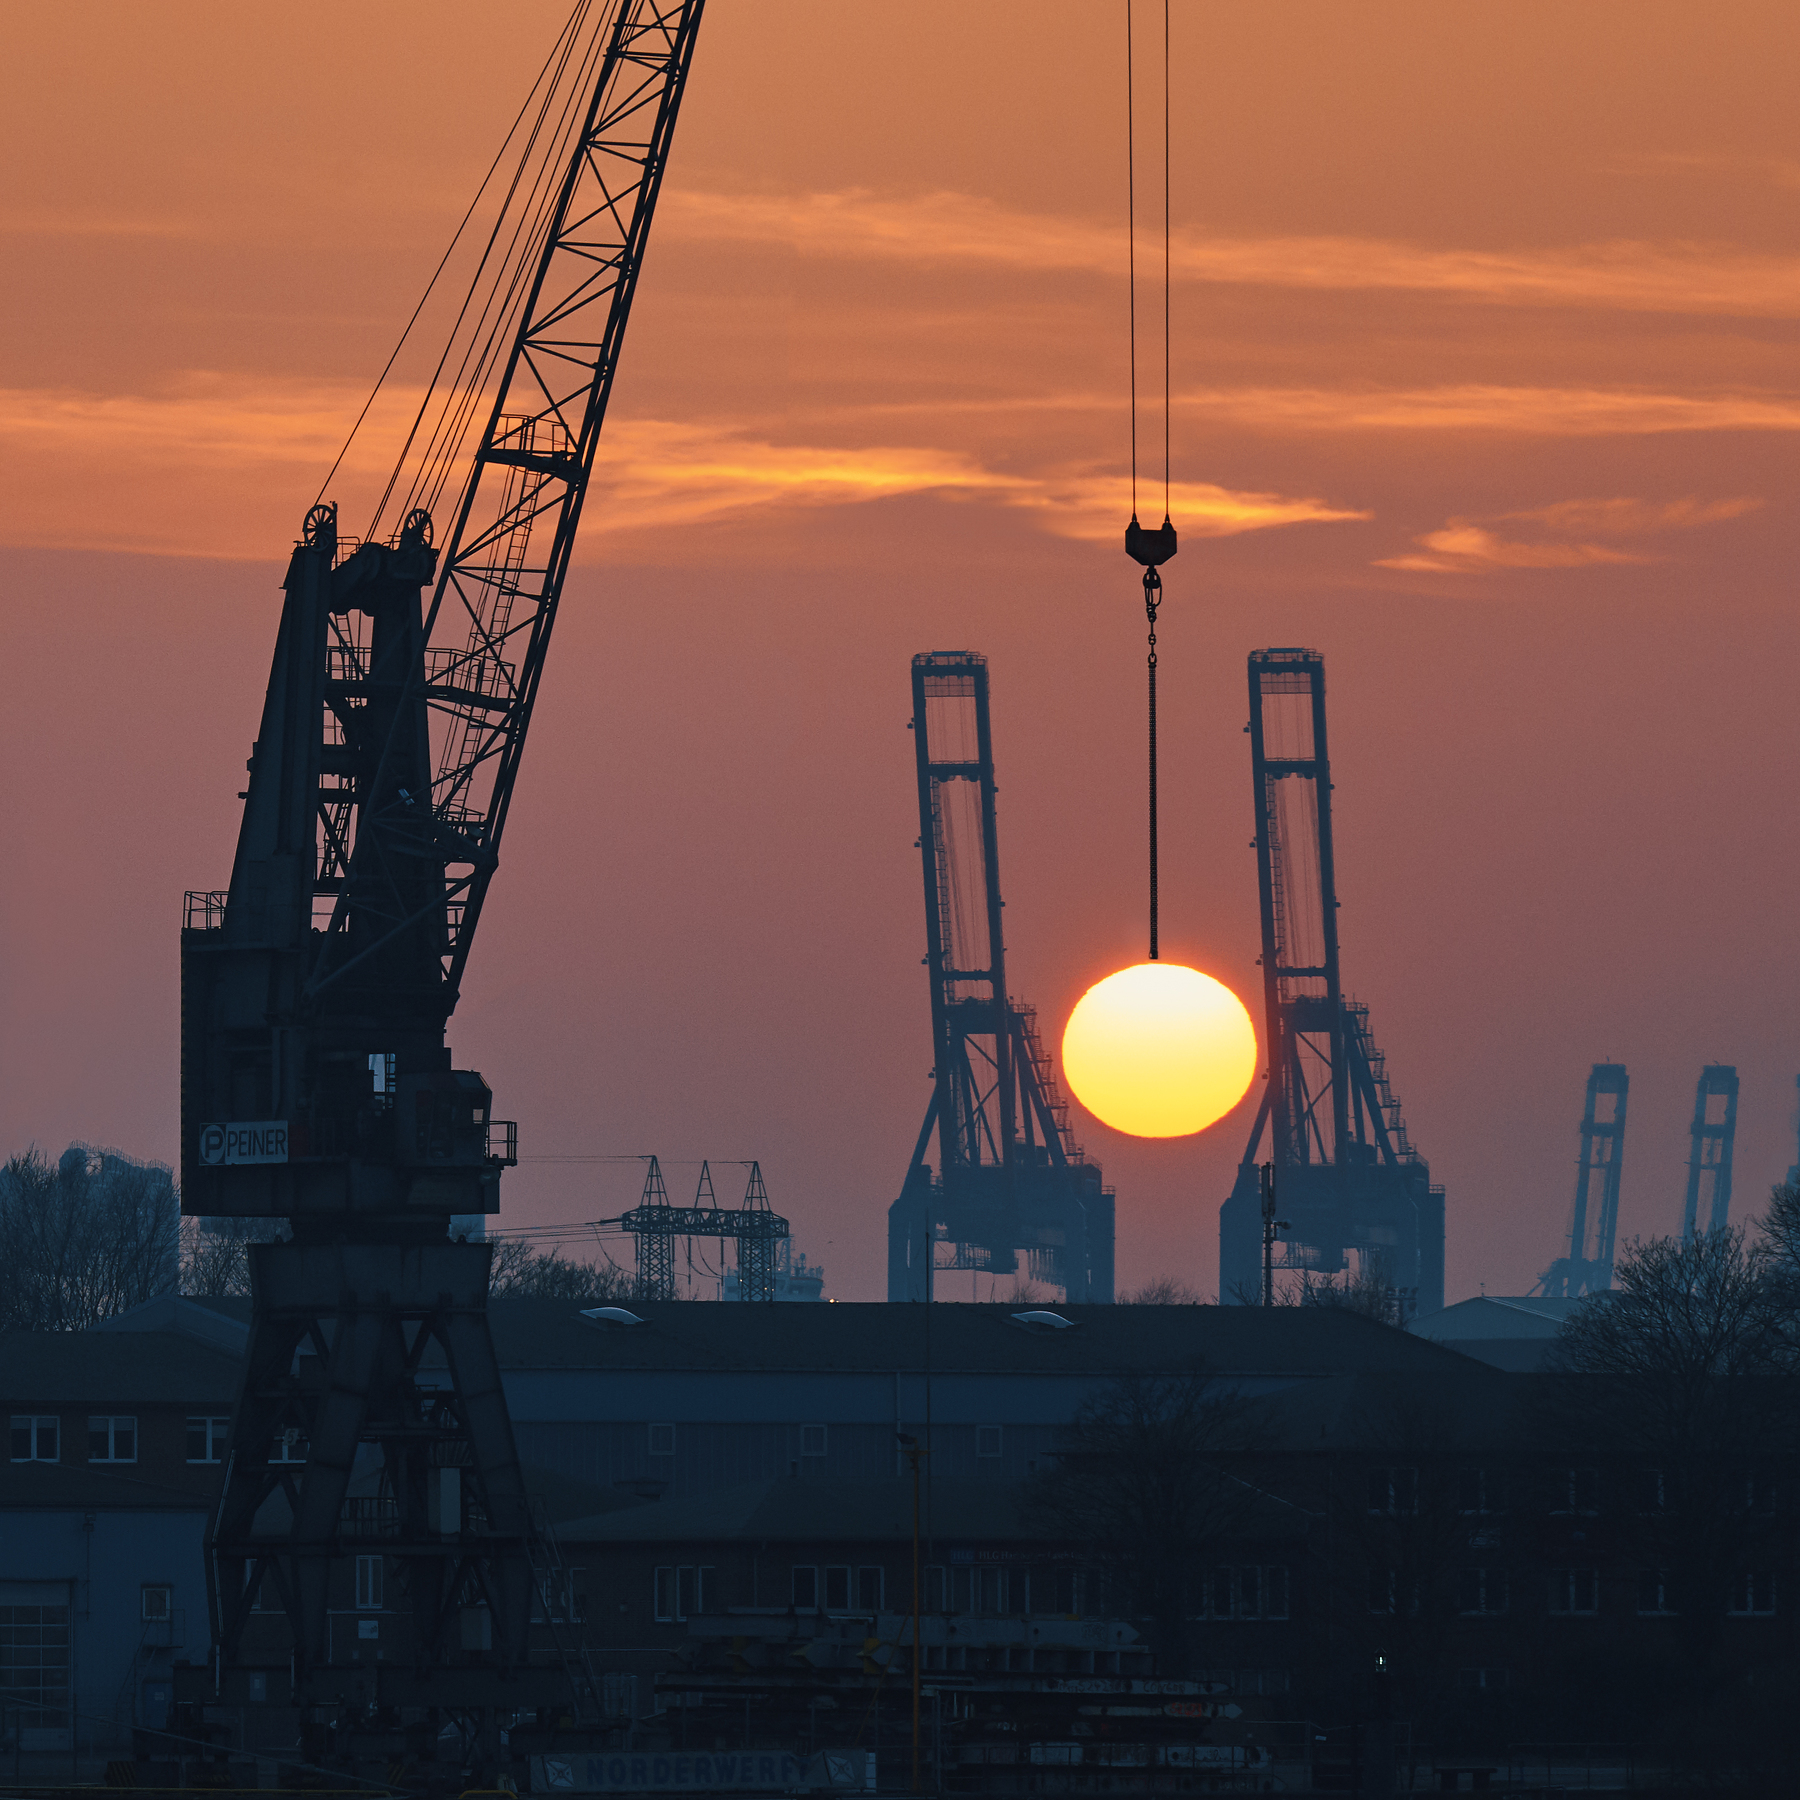 General 1800x1800 architecture Hamburg Alexander Schönberg city Germany cranes (machine) Sun sunset clouds building industrial